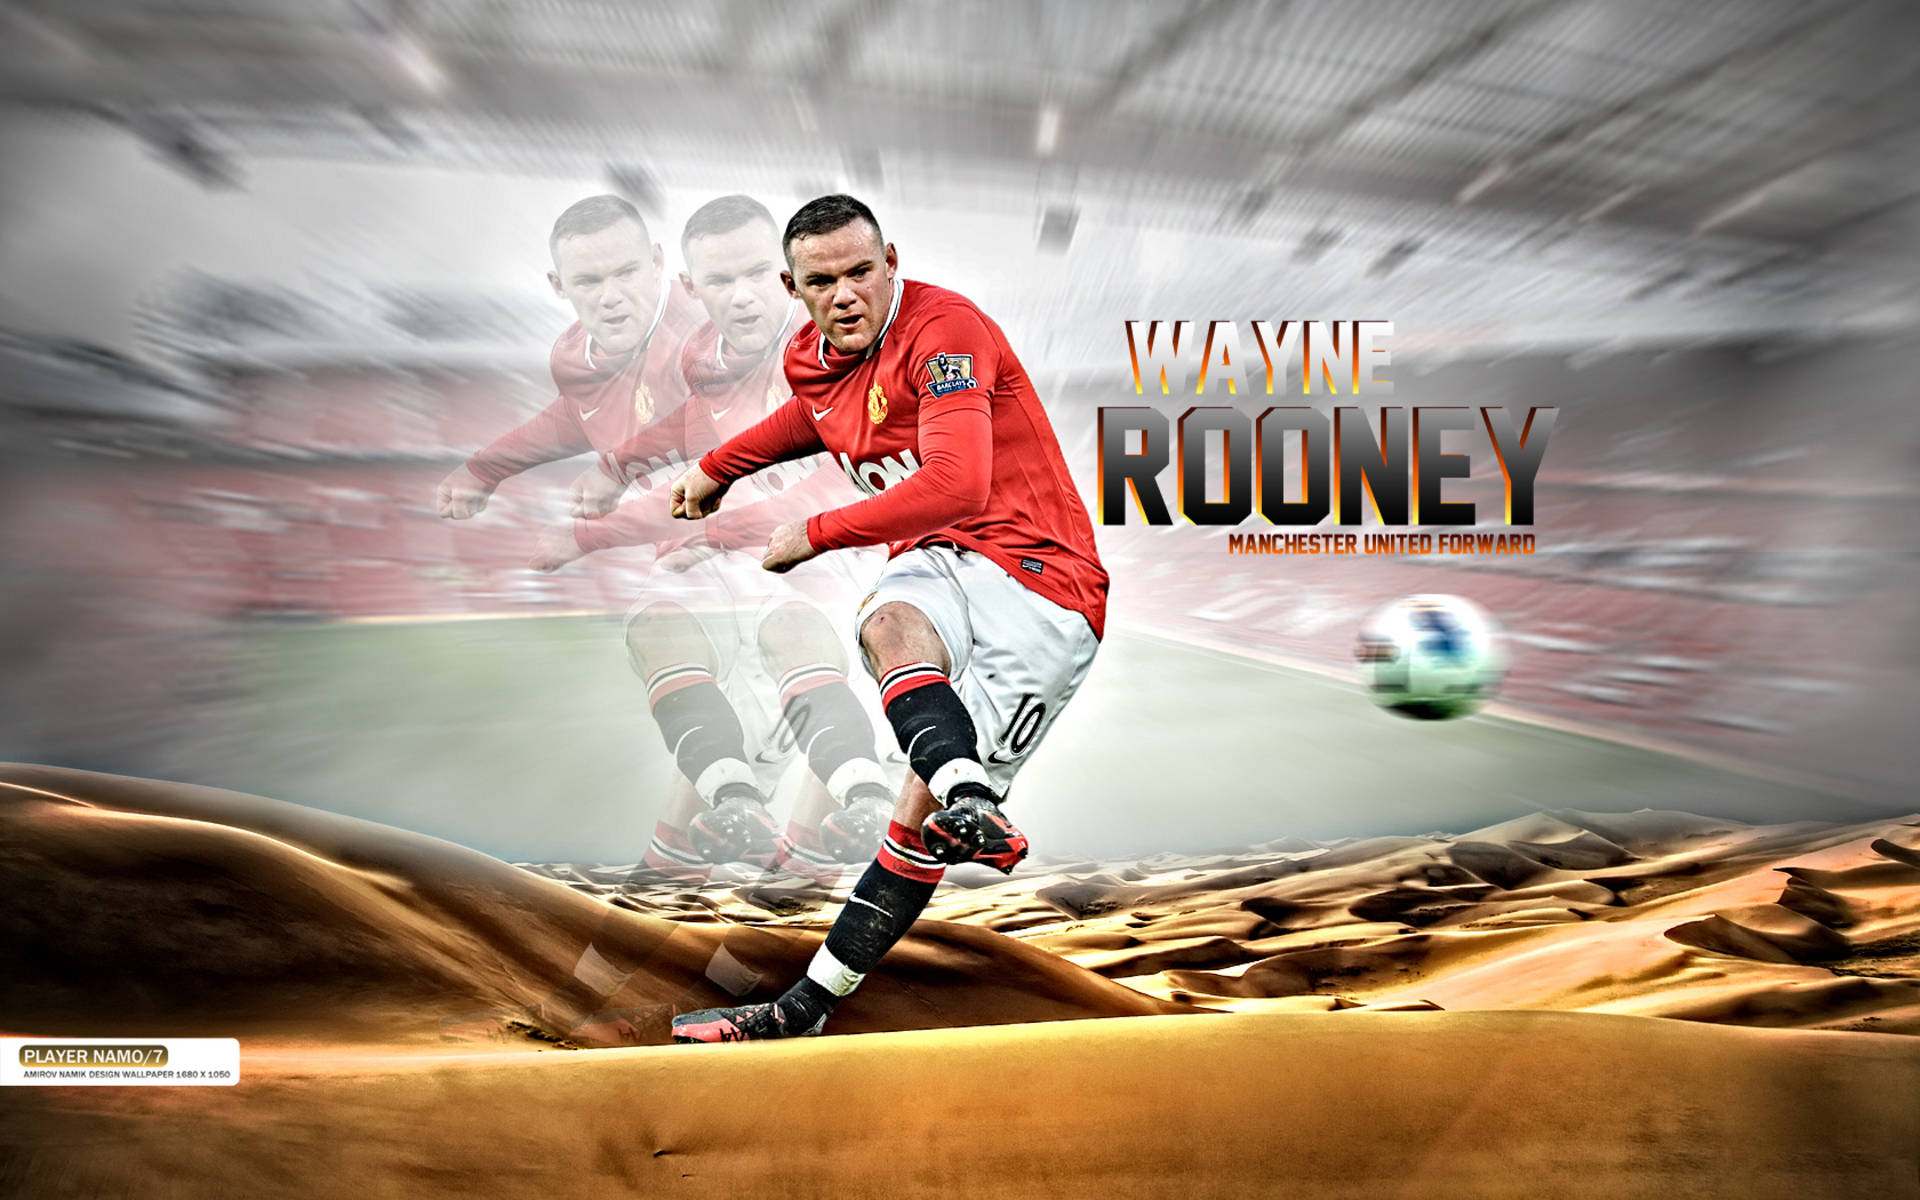 Wayne Rooney Manchester United Forward Background